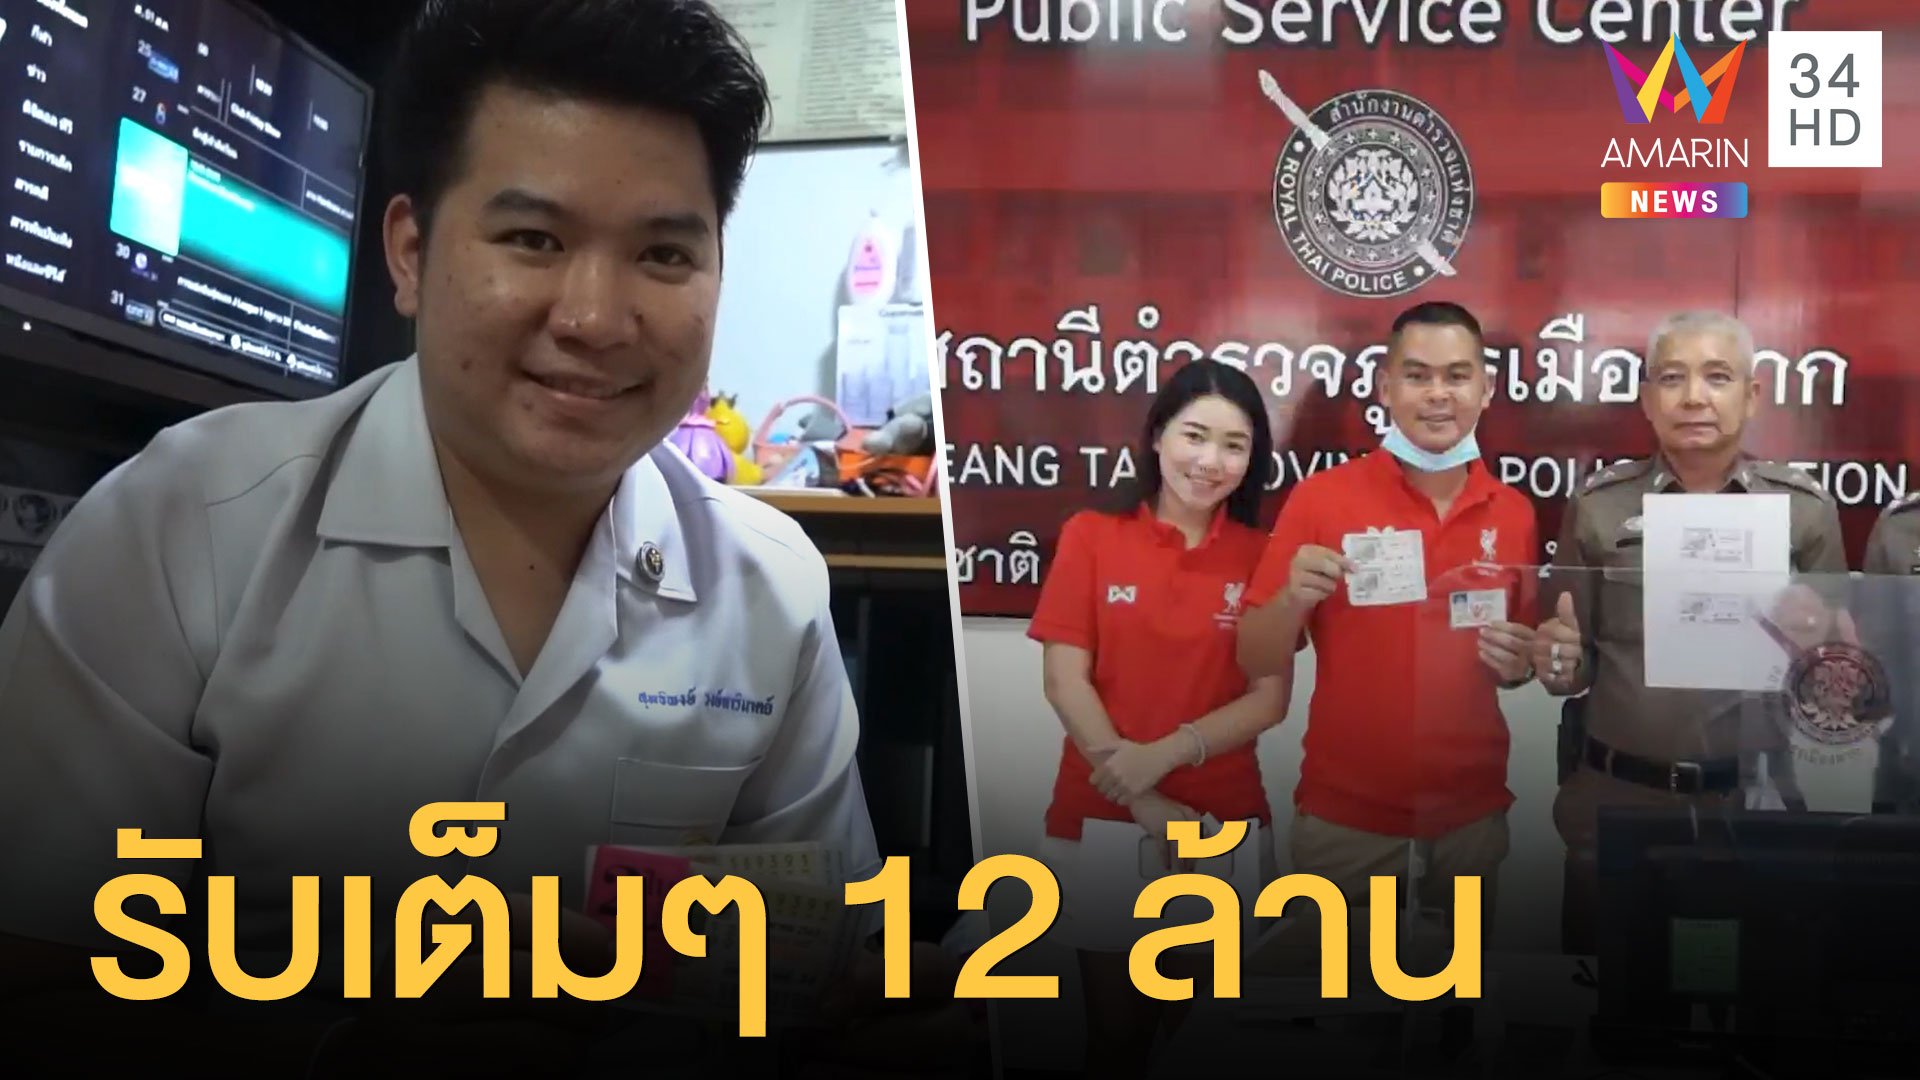 บุรุษพยาบาล และตำรวจหนุ่มรูปหล่อ สุดเฮง รับเงิน 12 ล้าน | ข่าวอรุณอมรินทร์ | 2 ส.ค. 63 | AMARIN TVHD34